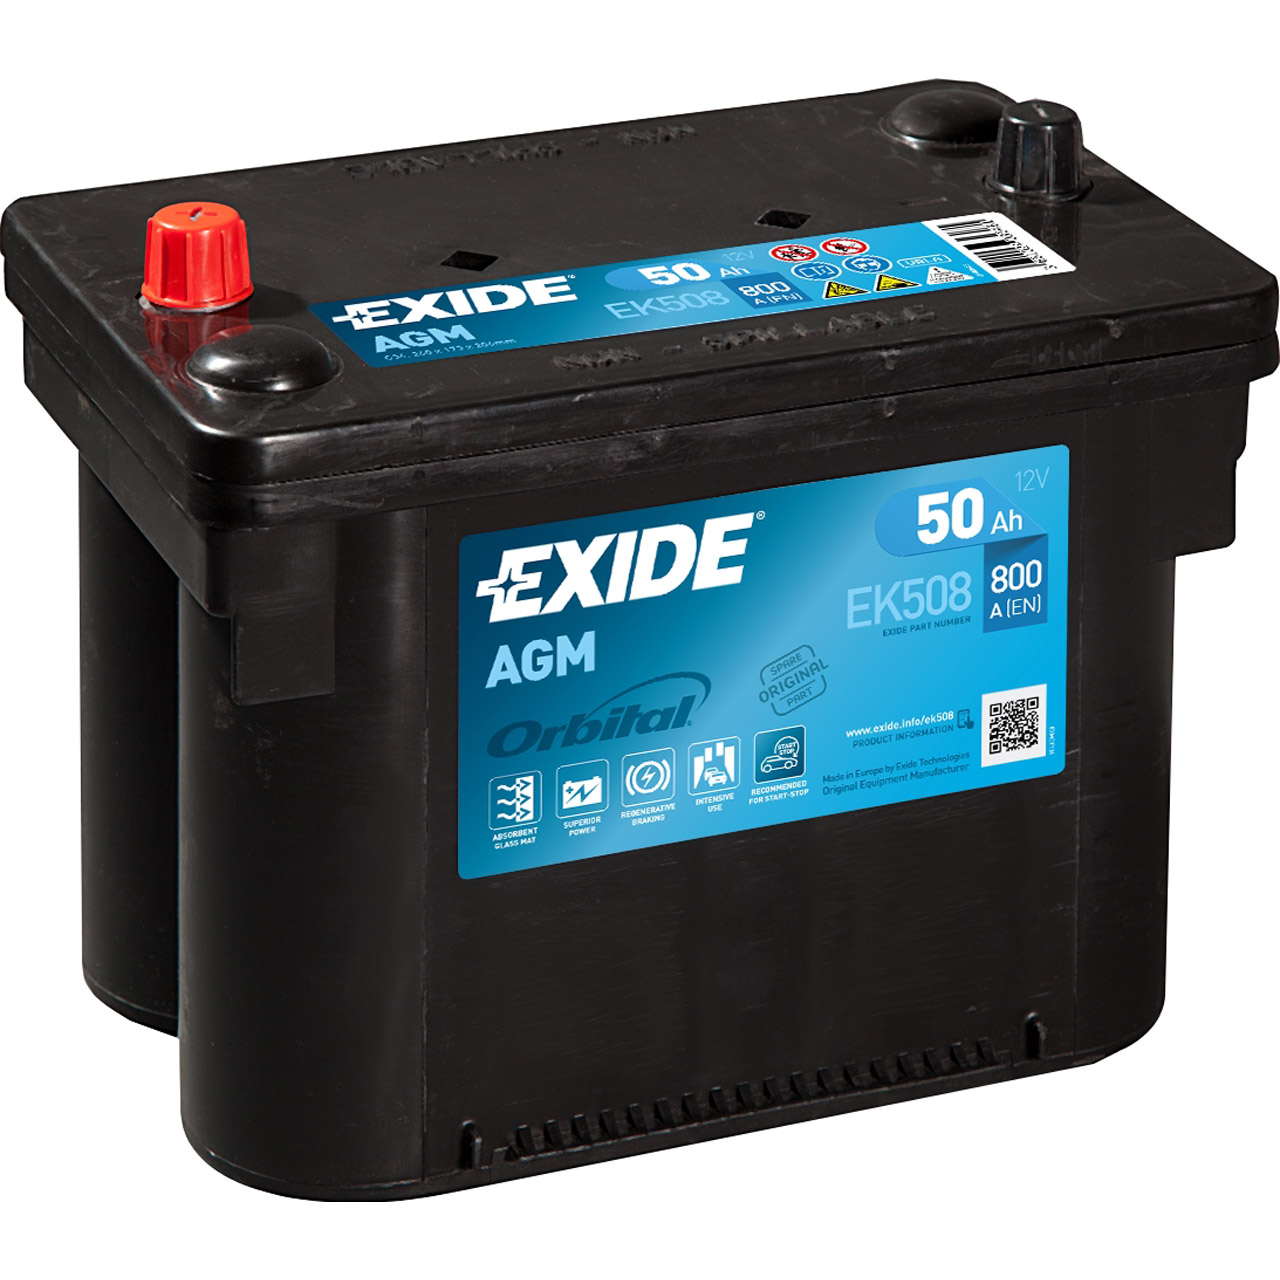 EXIDE EK508 AGM START-STOP Autobatterie Batterie Starterbatterie 12V 50Ah EN800A